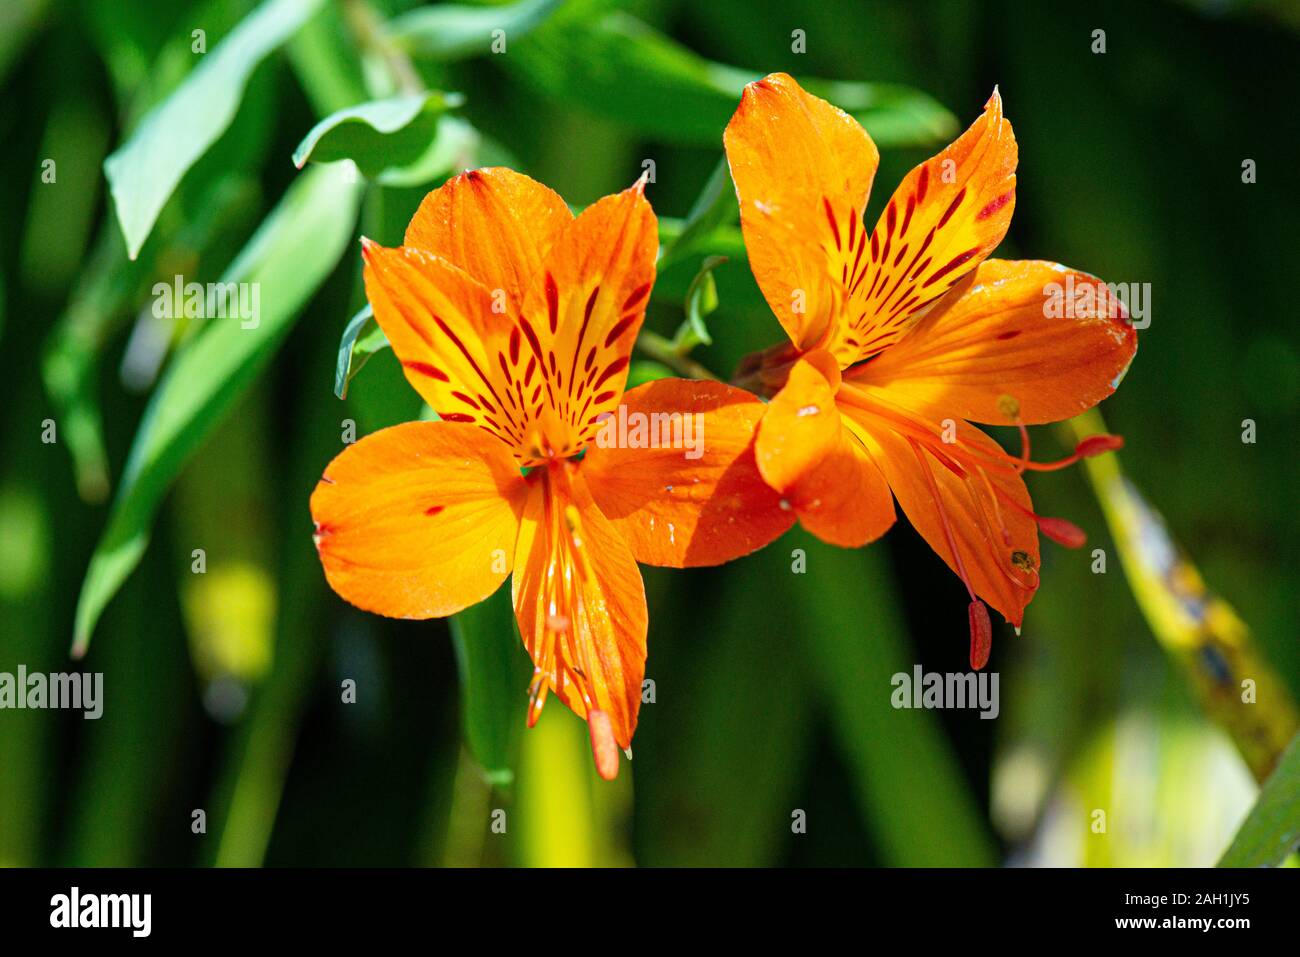 Orange Alstroemeria flowers Stock Photo